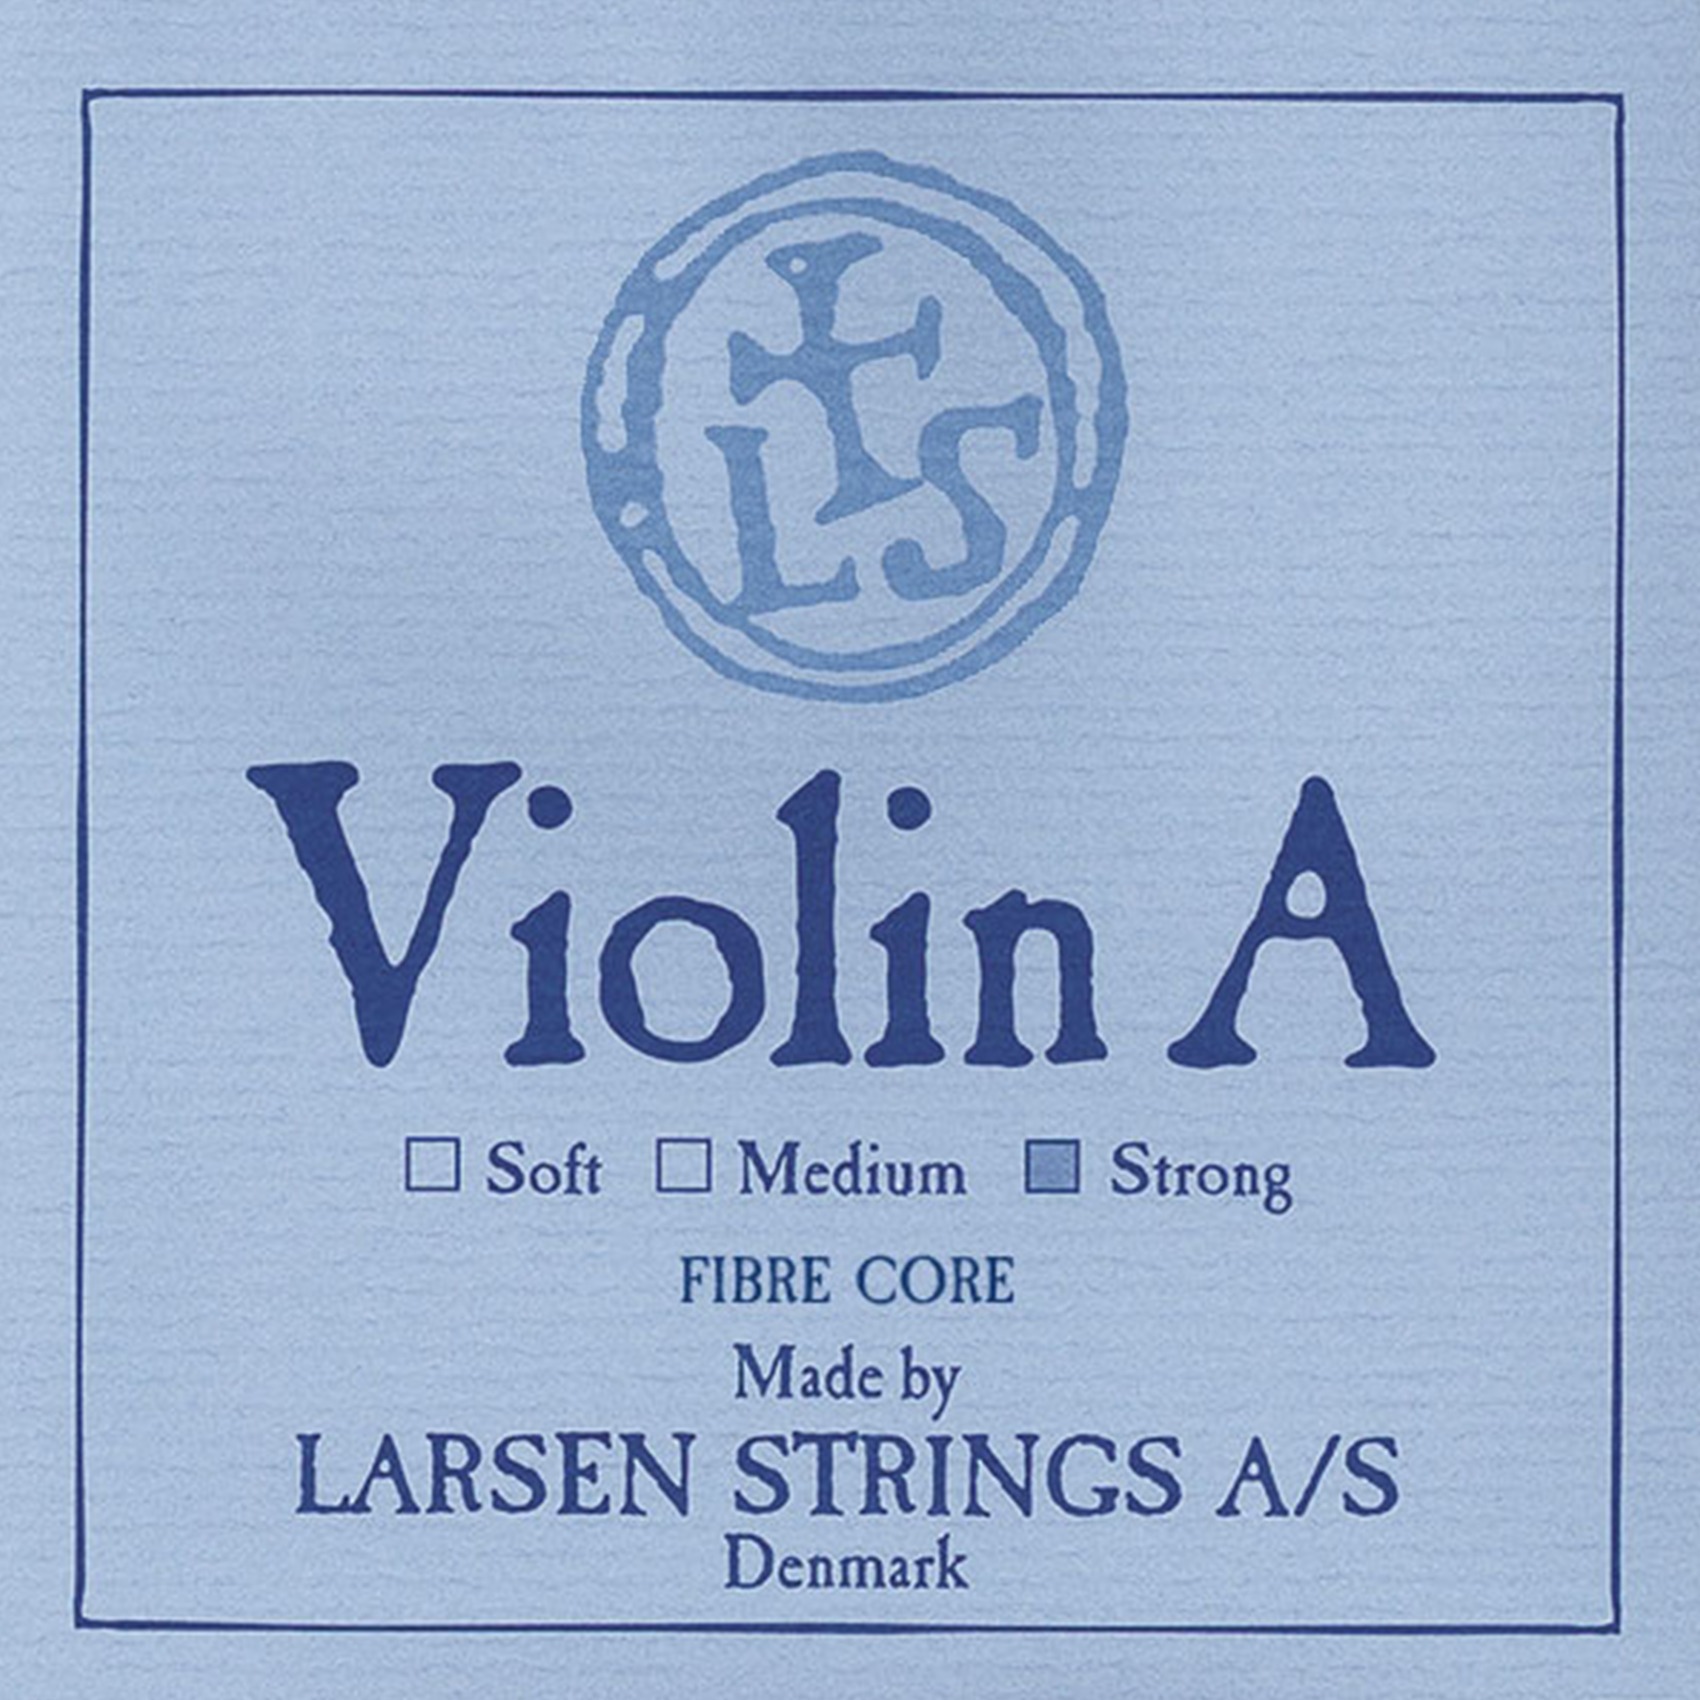 Струны для скрипки Larsen Strings Original струна Ля 4/4 сильное натяжение алюминий